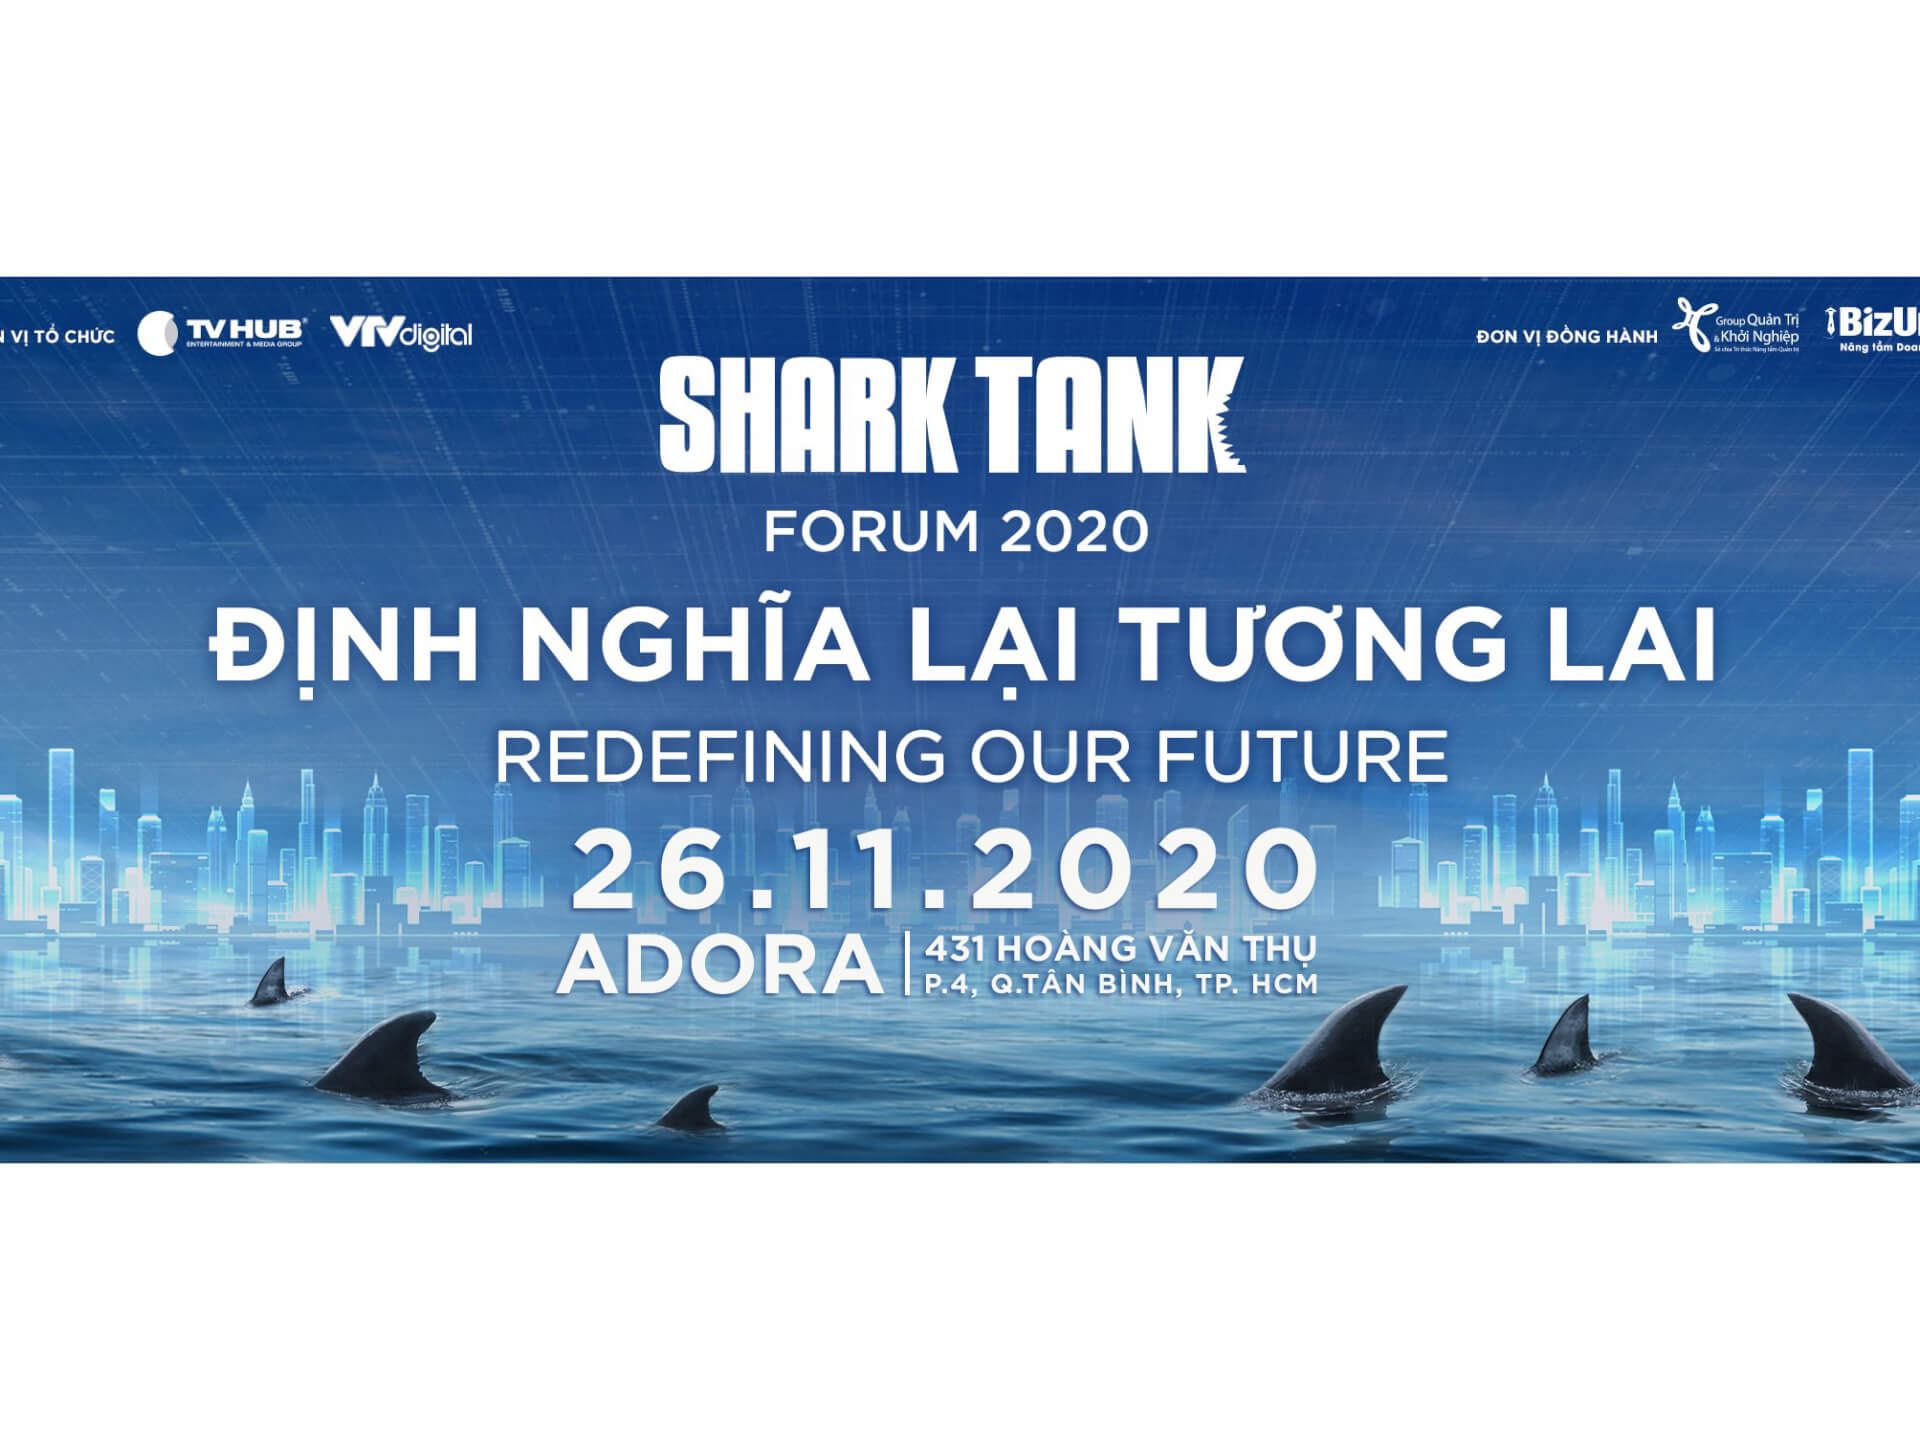 Shark Tank lựa chọn Zoom Webinar của Repu Digital cho hội thảo “Định nghĩa lại tương lai”